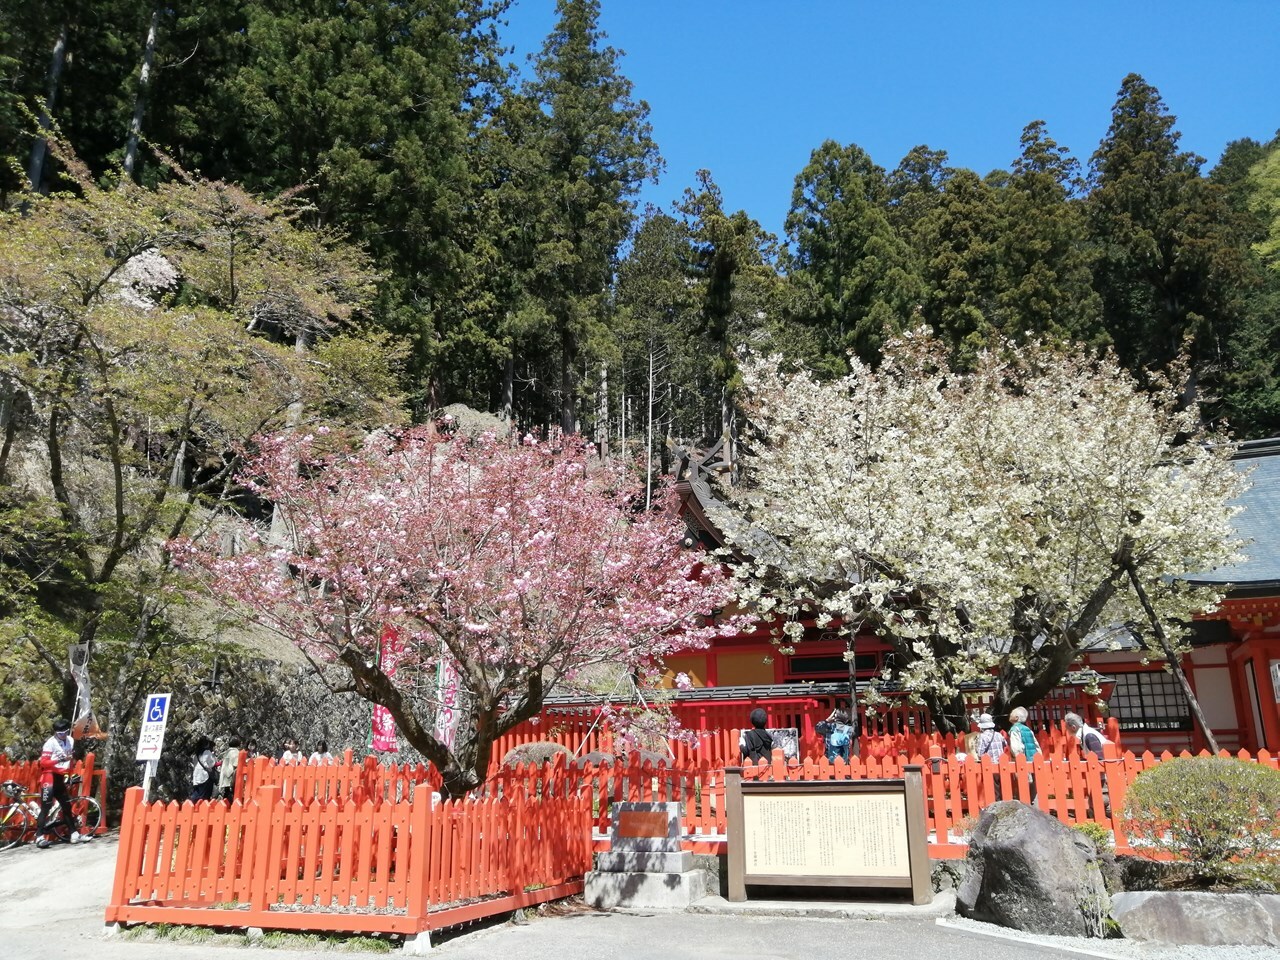 写真左が八重桜、右がご神木・ウコン桜